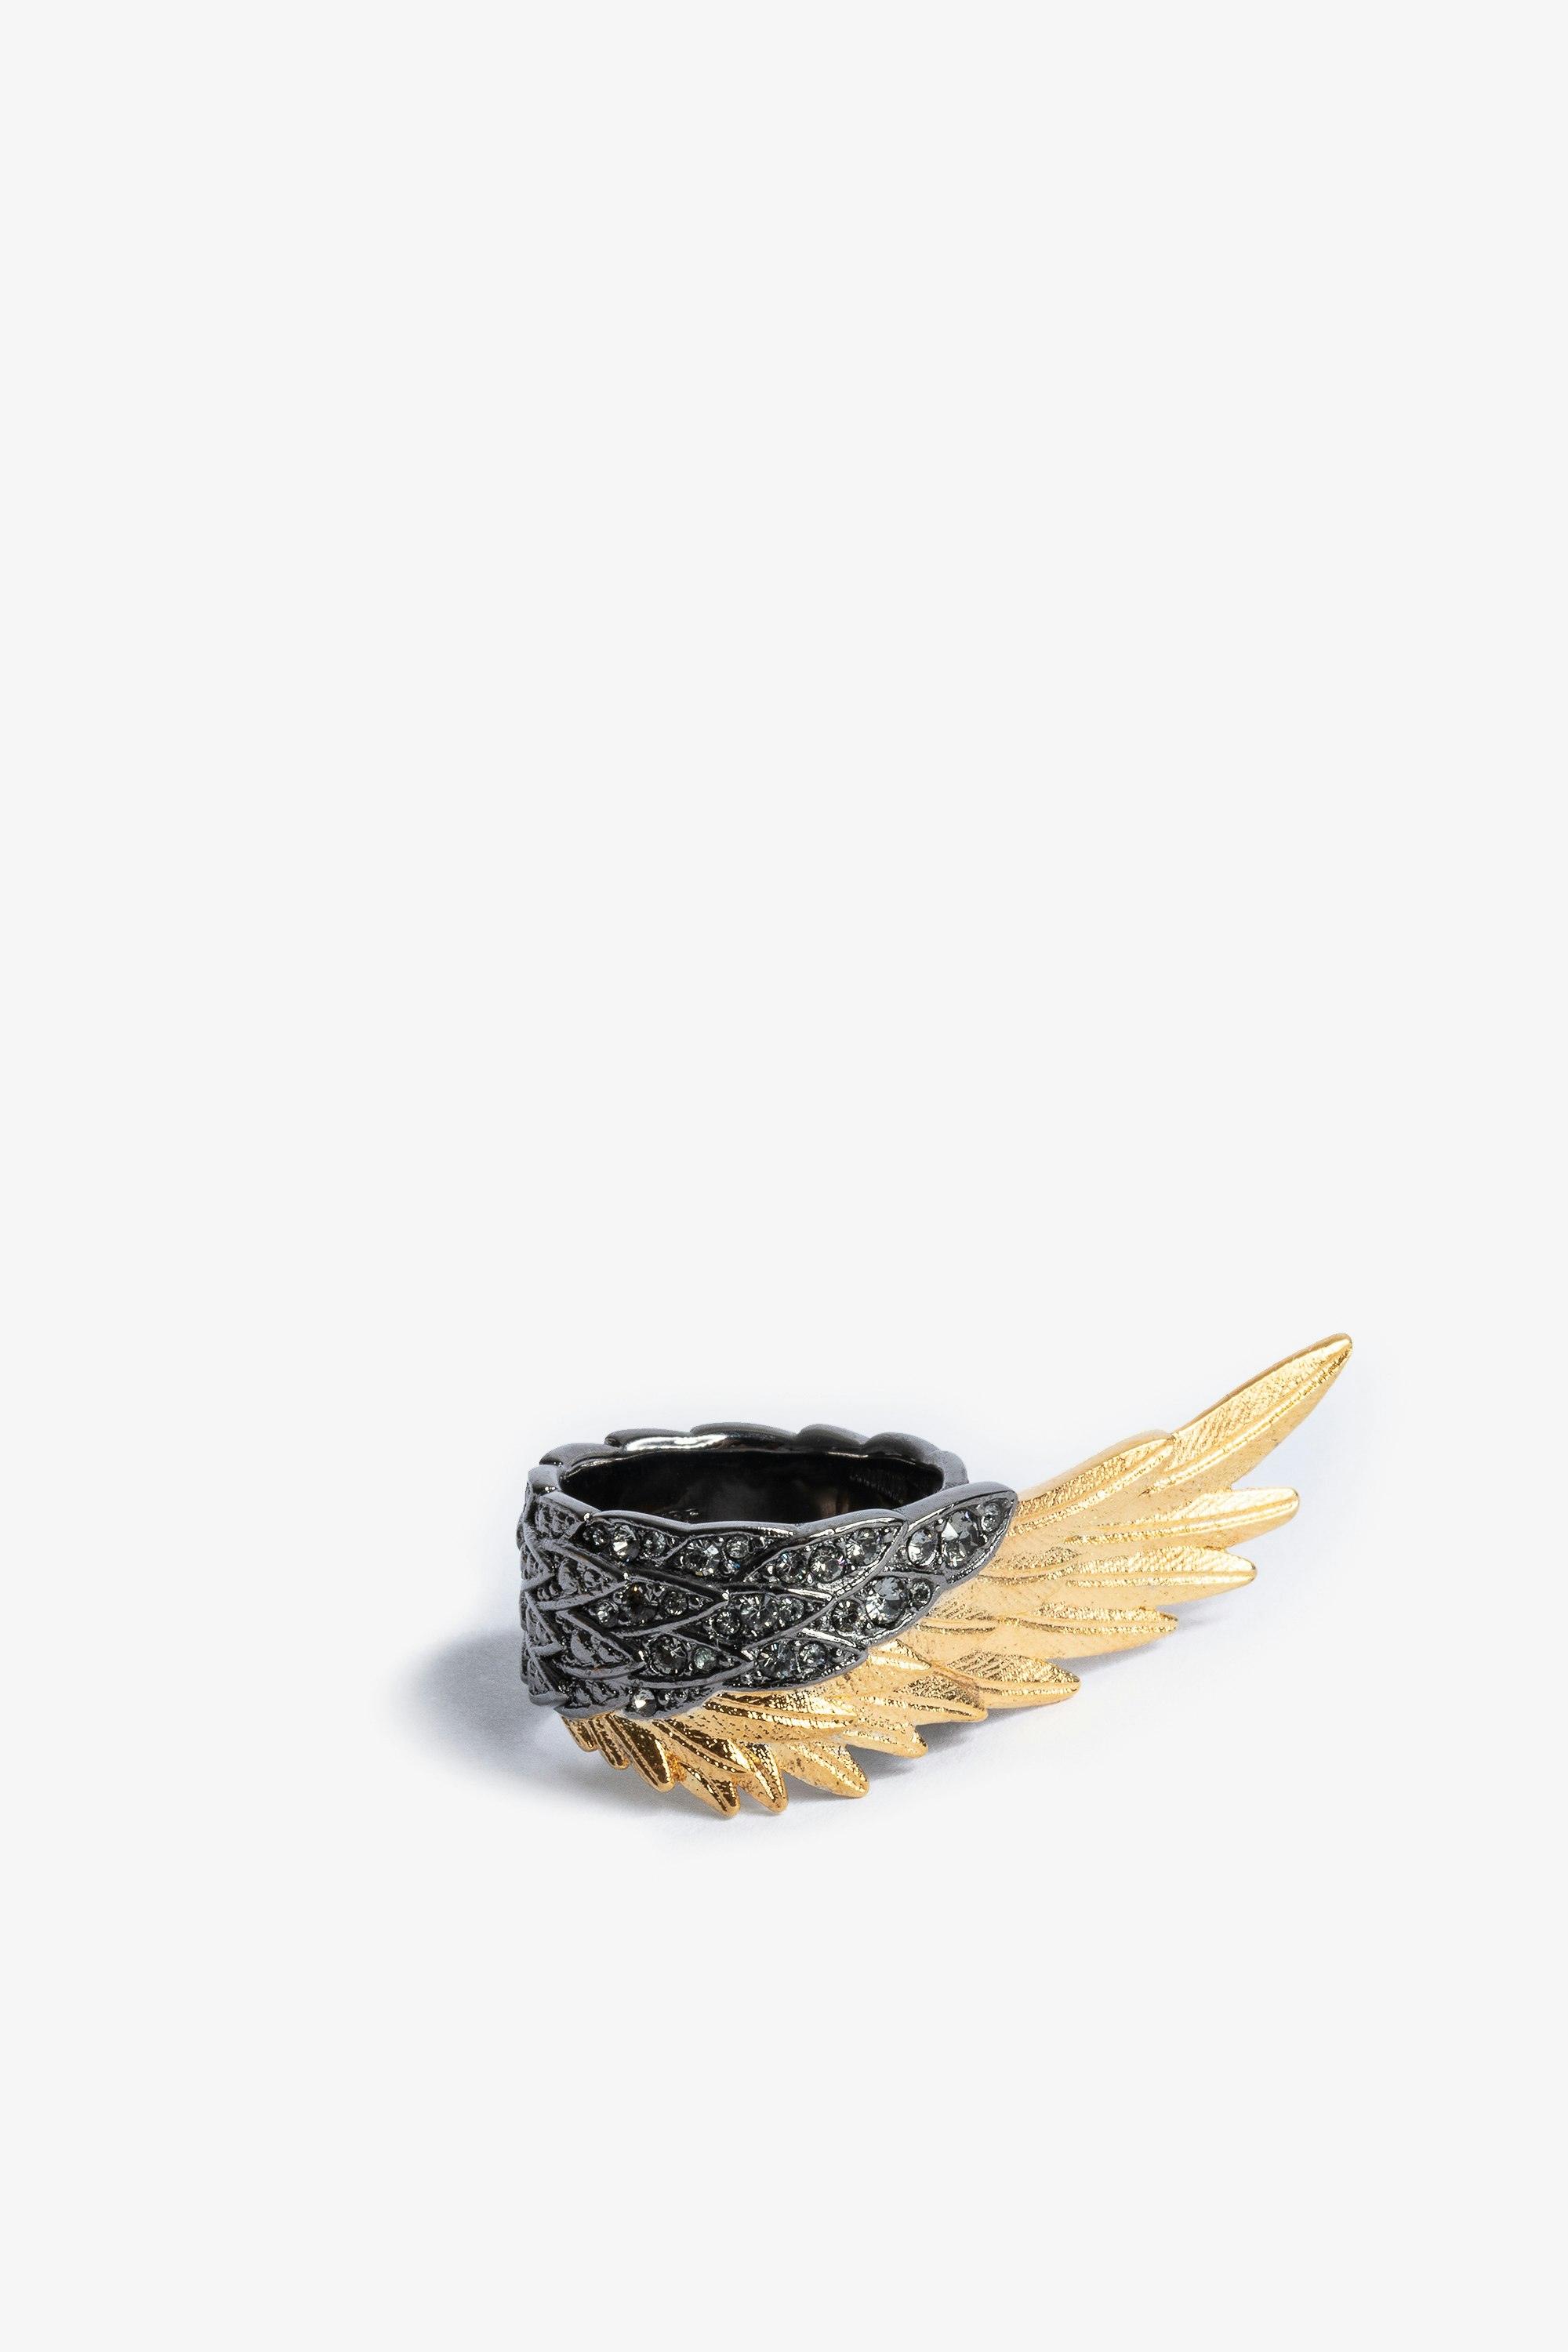 Bague Rock Feather Spread Your Wings Bague en laiton doré et noirci sertie de cristaux femme.